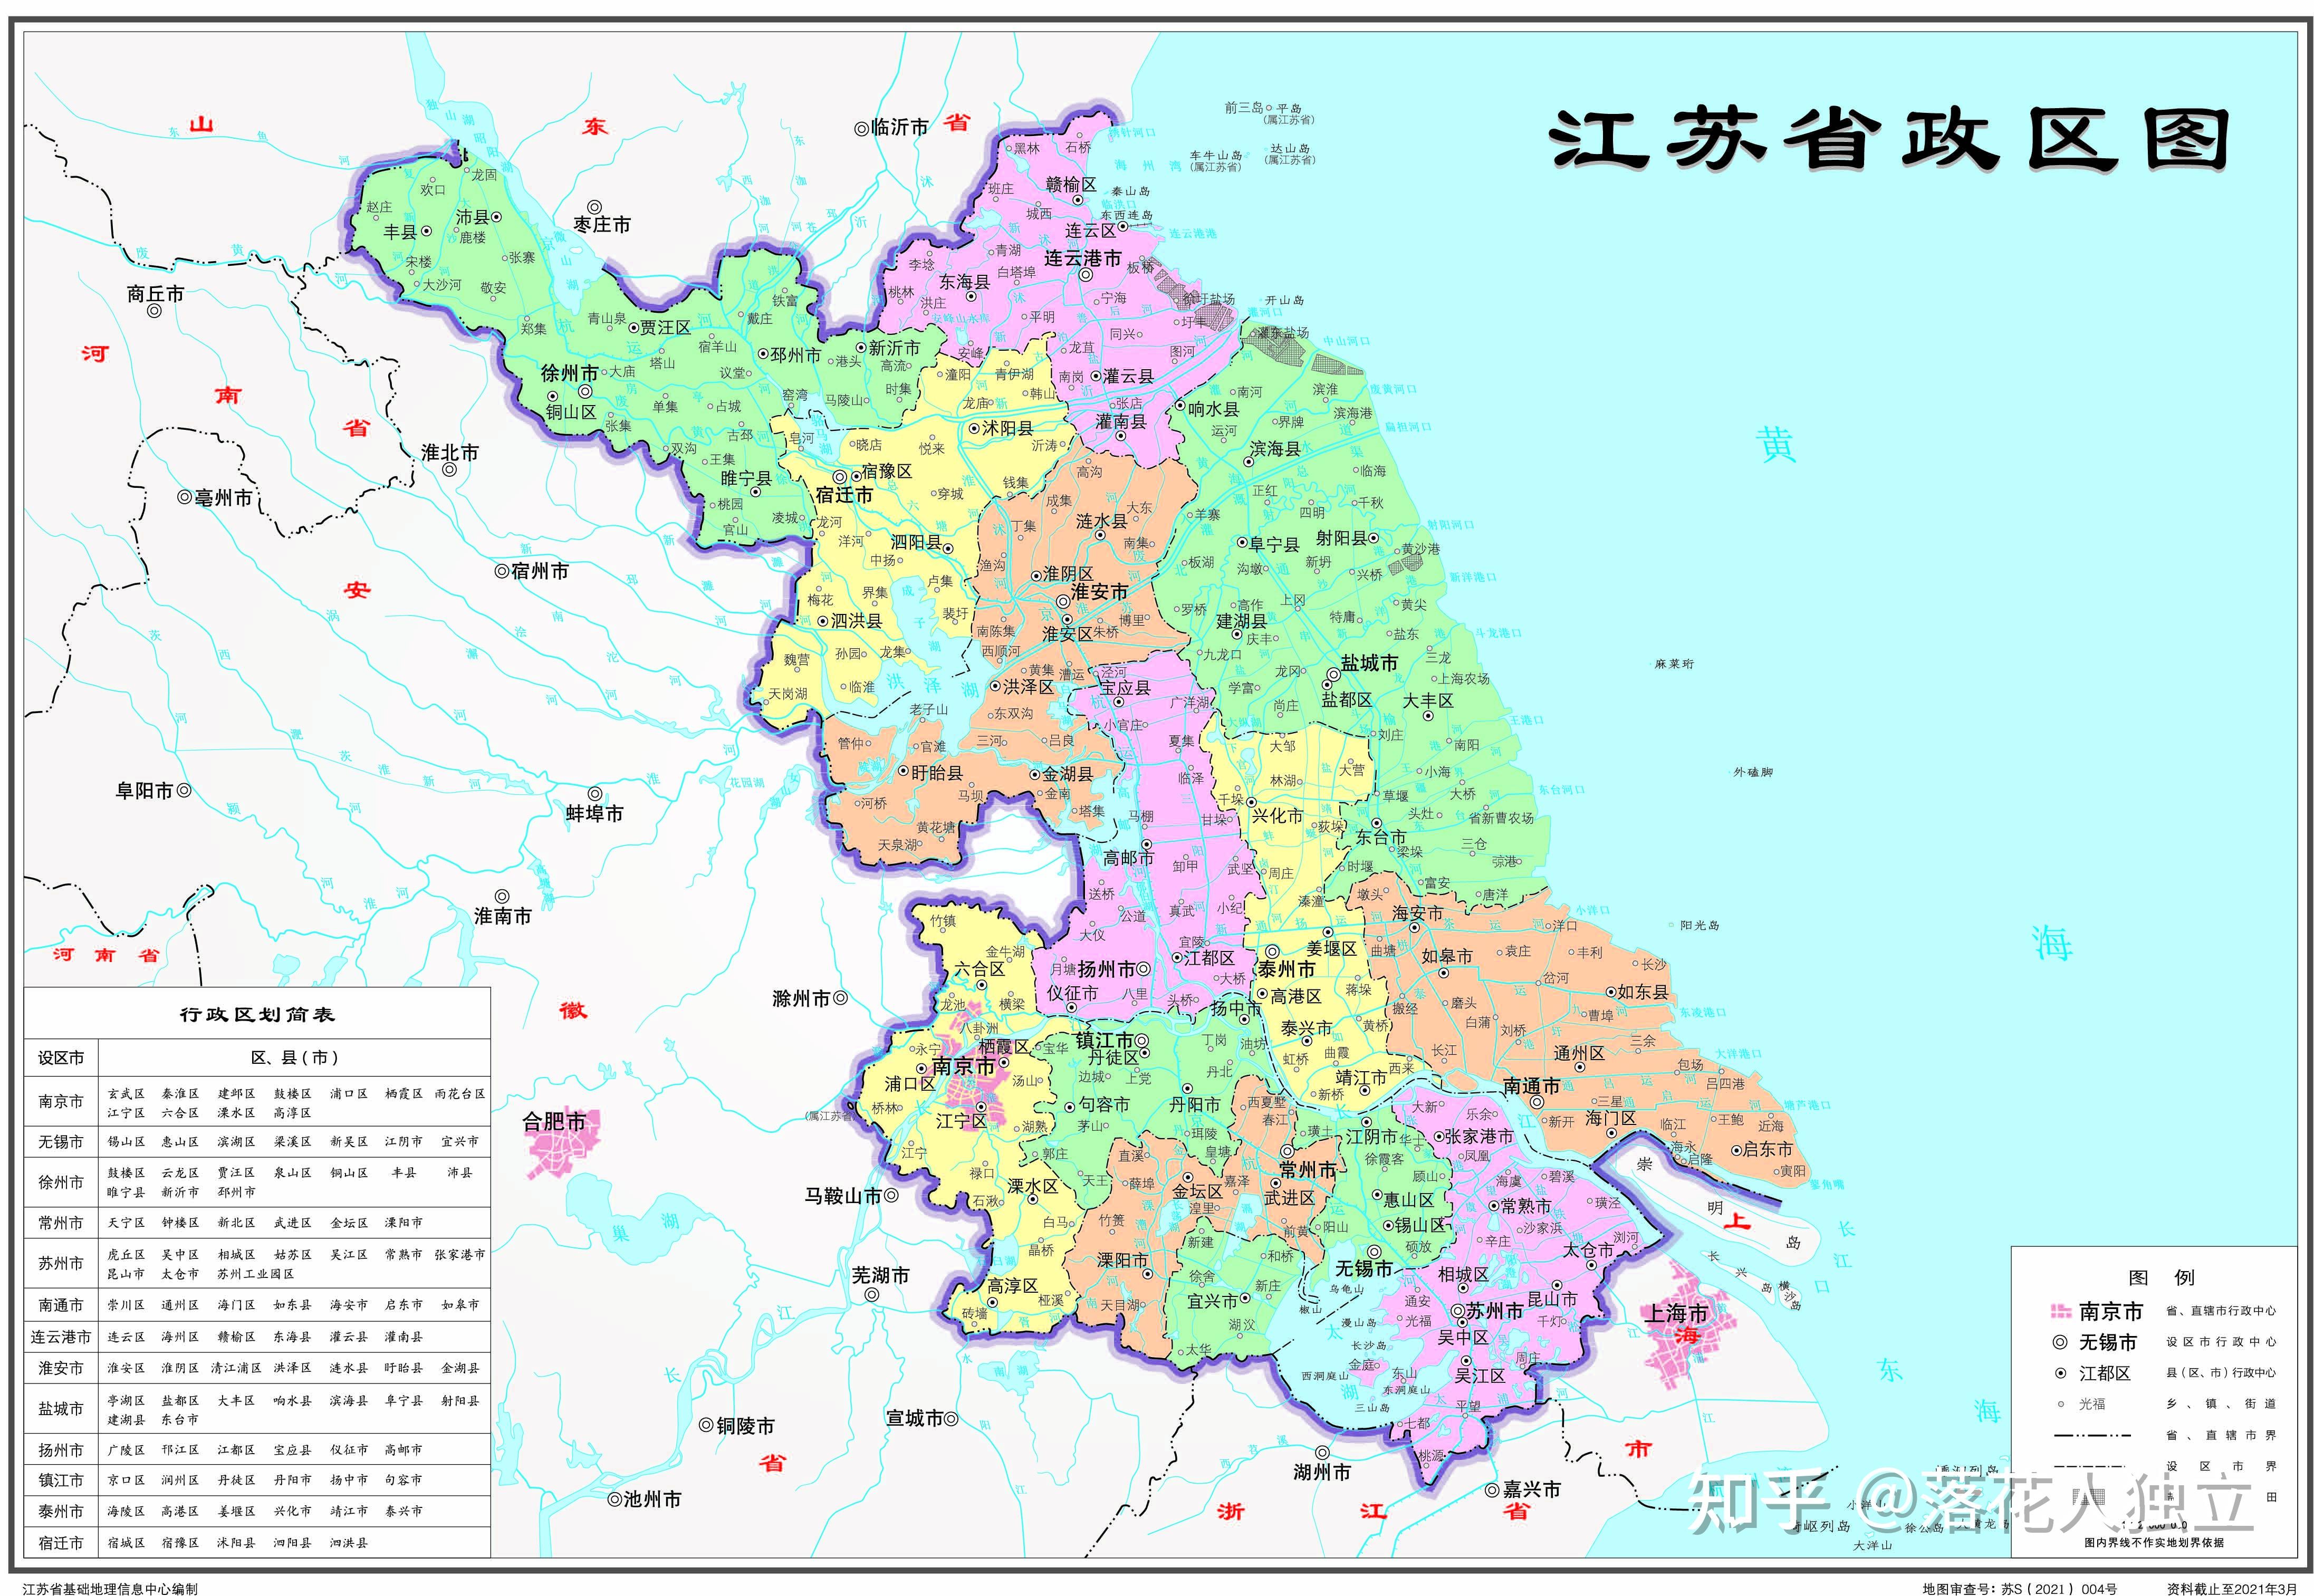 江苏地图册(最新版)图片